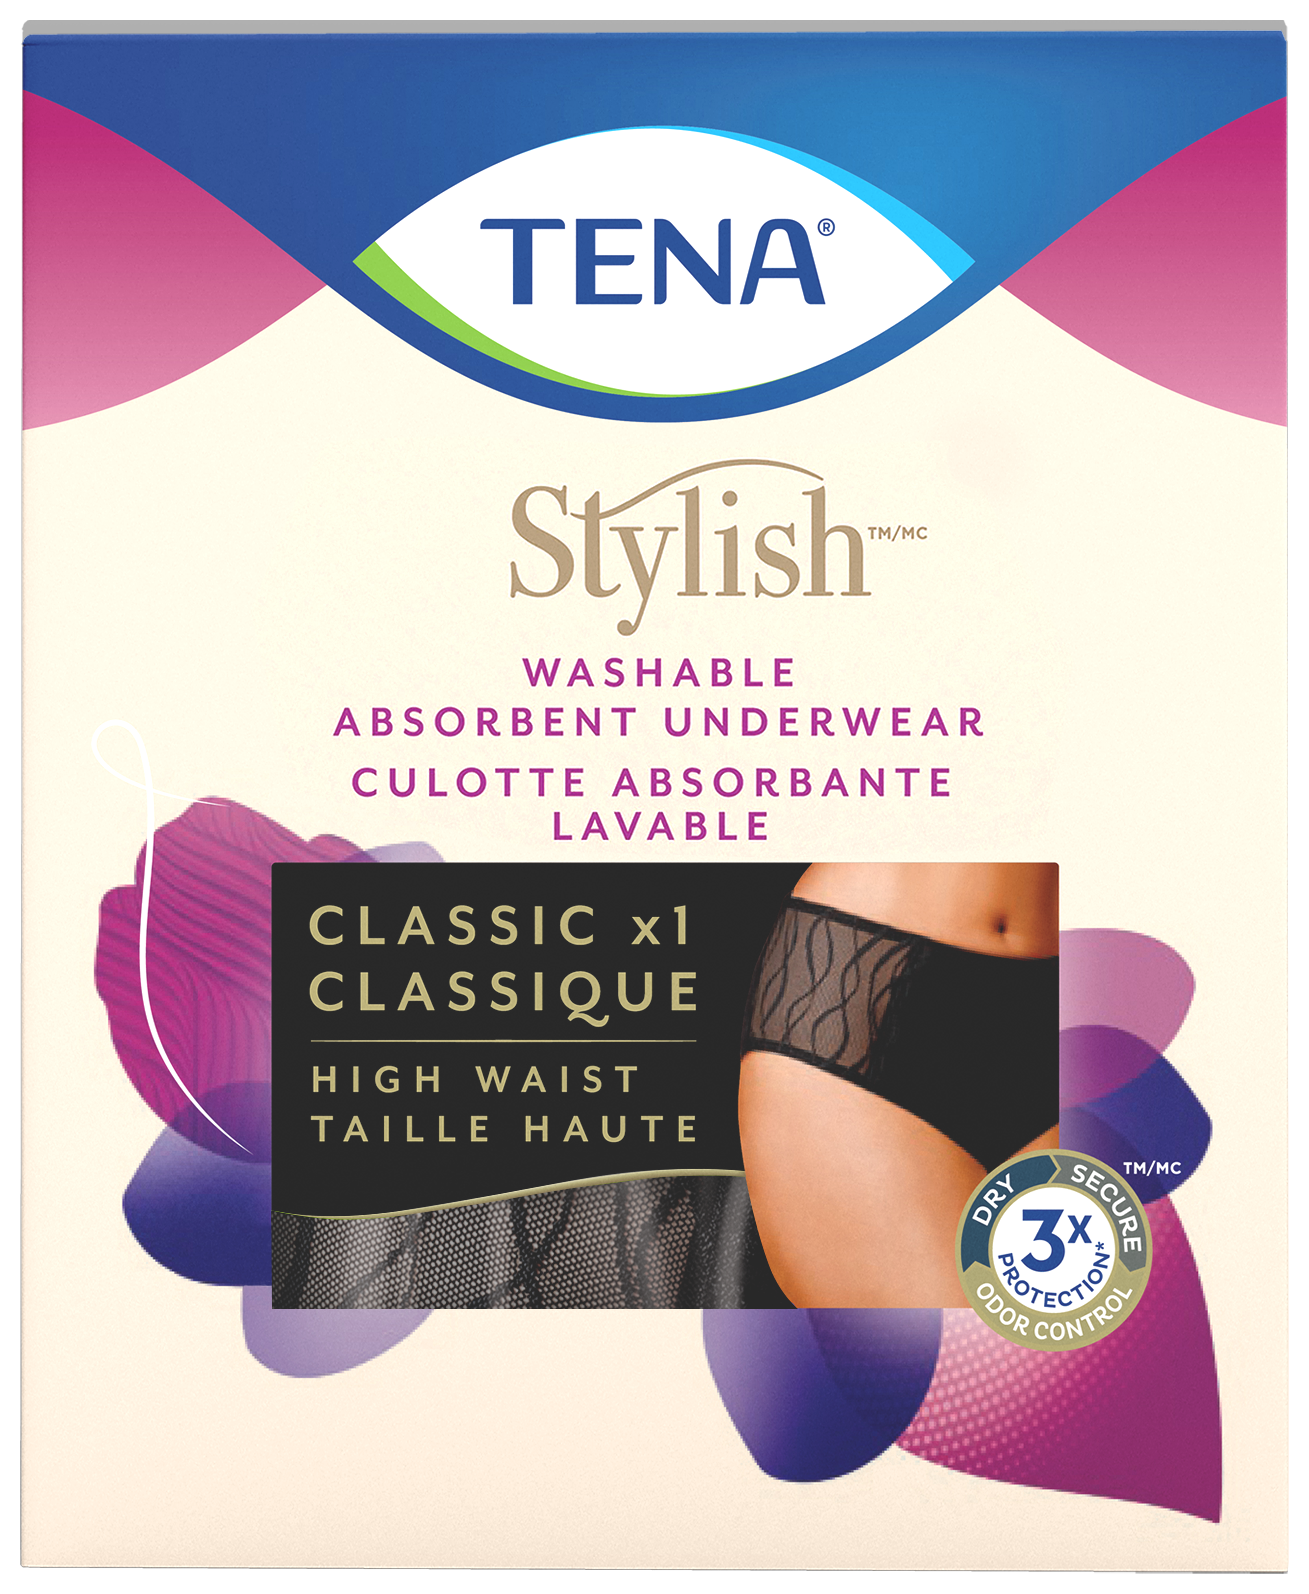 Culotte absorbante lavable TENA Stylish pour fuites urinaires légères | Coupe classique | Noire